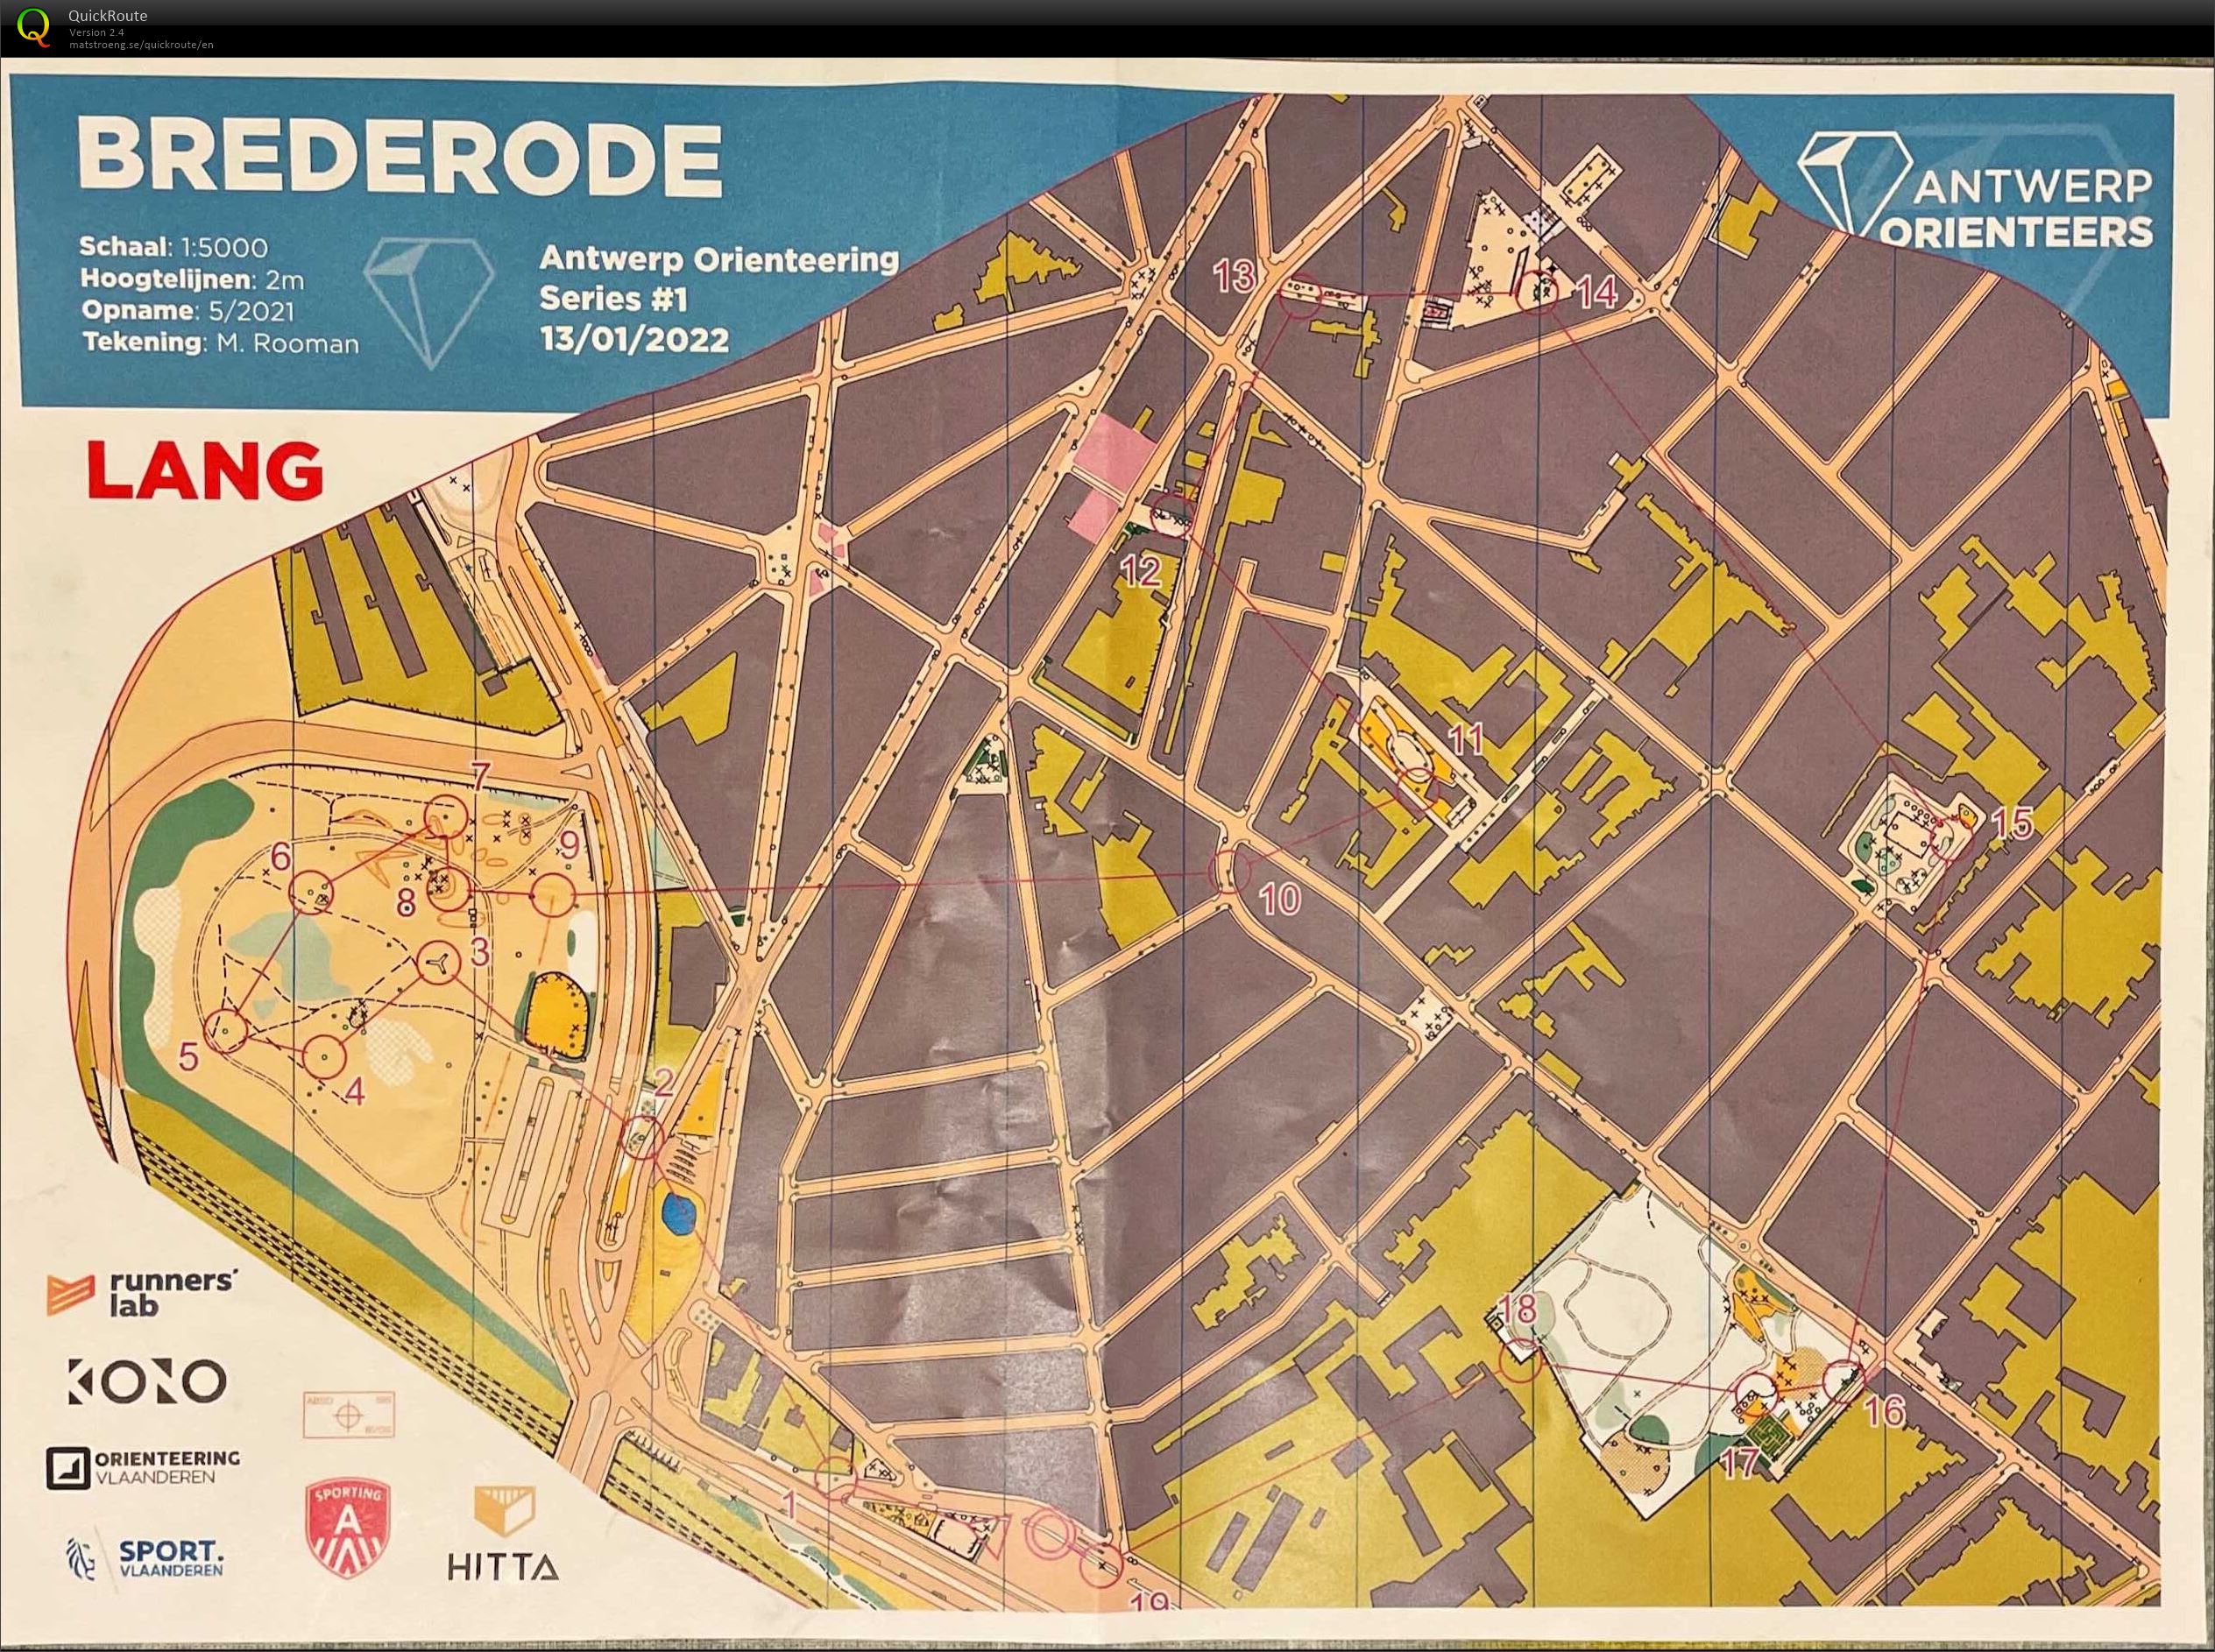 Antwerp Orienteering Series - Brederode - Lang (2022-01-13)